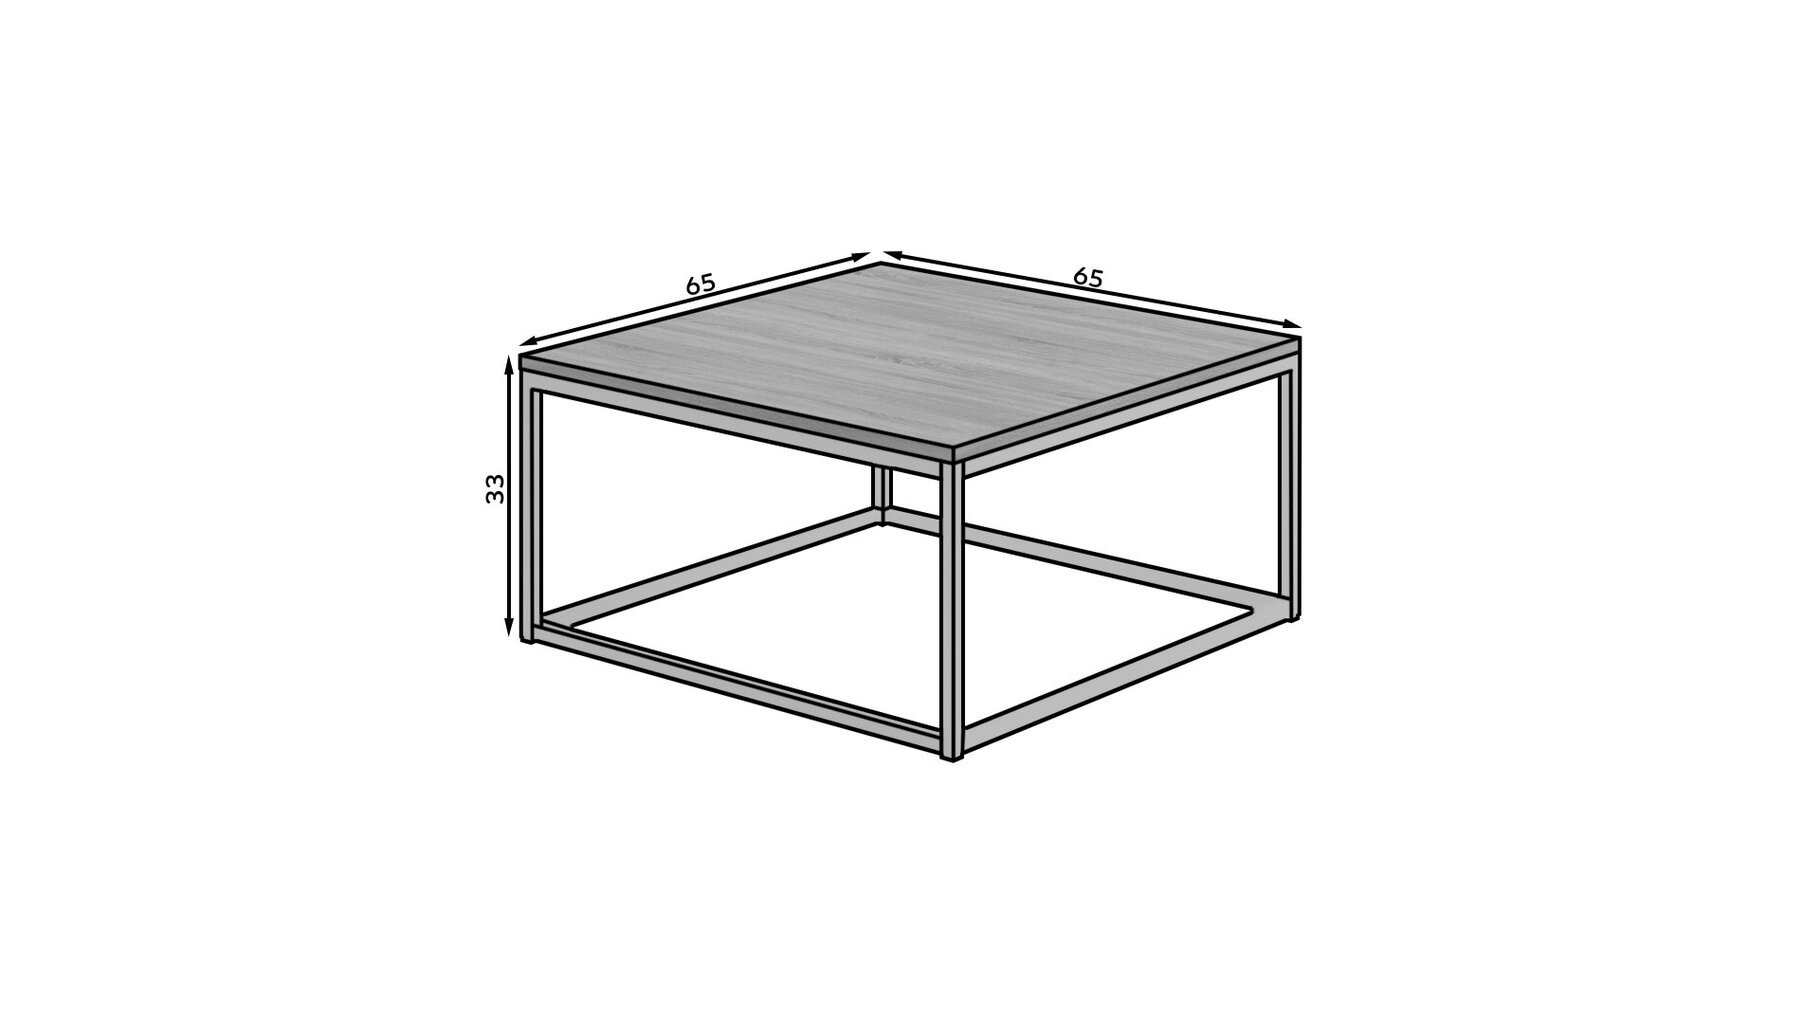 Kavos staliukas ADRK Furniture Belten 65x65cm, juodas kaina ir informacija | Kavos staliukai | pigu.lt